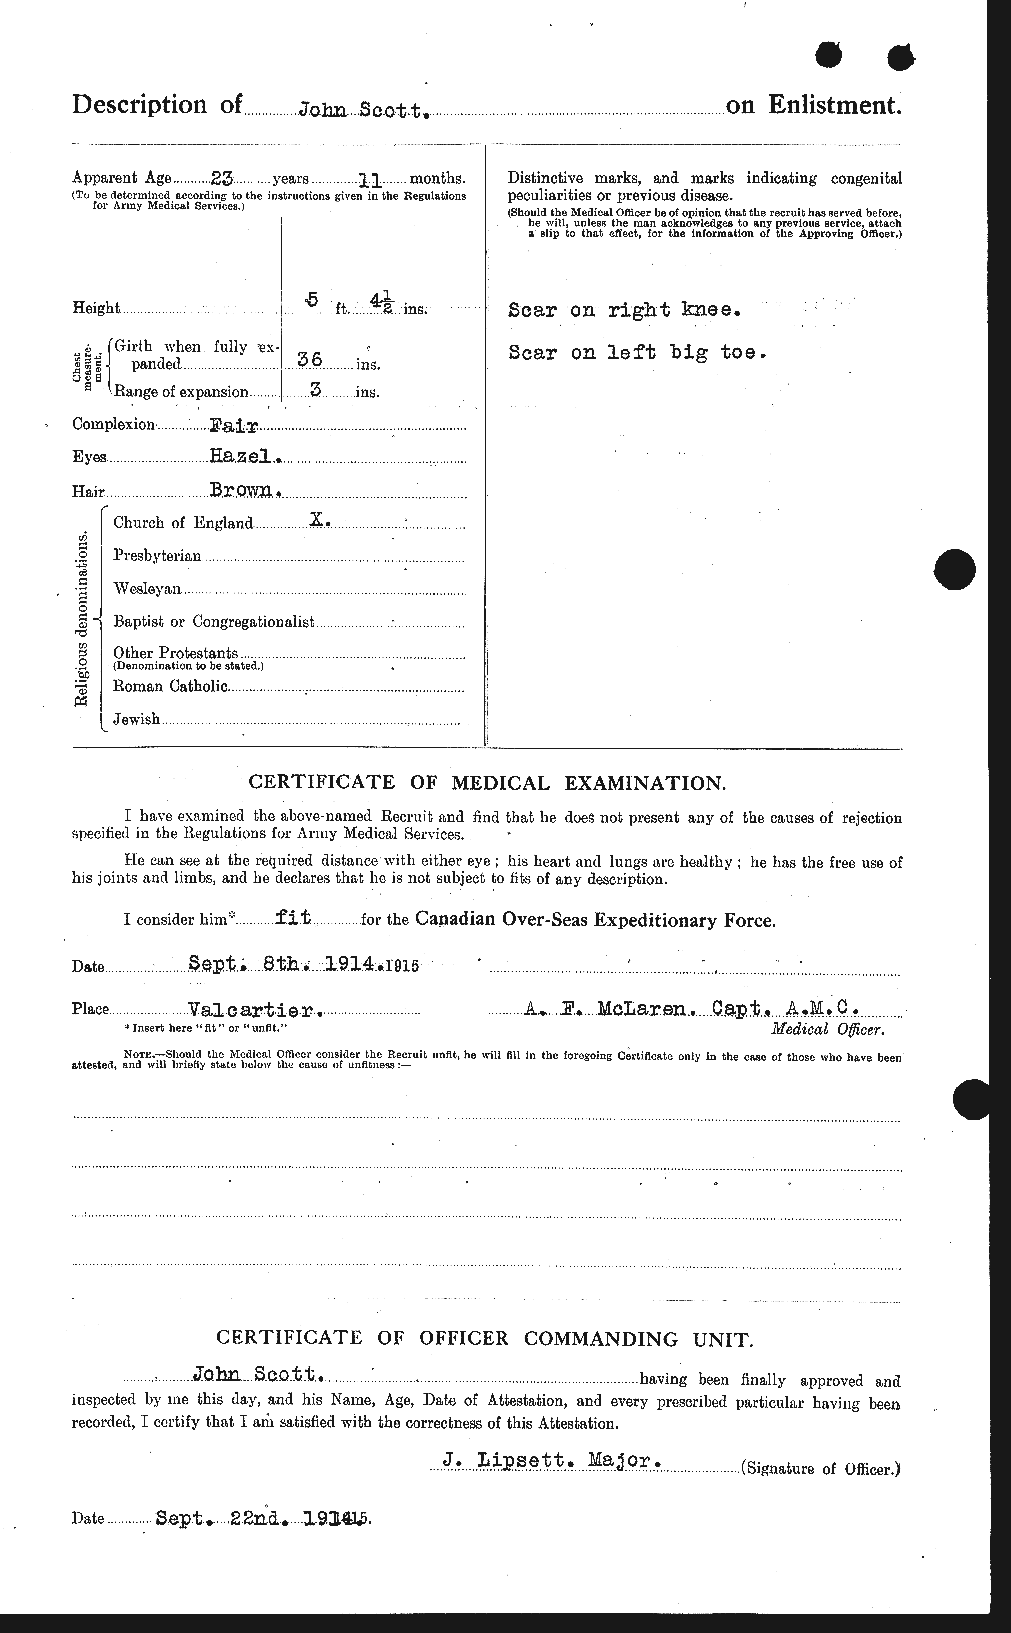 Dossiers du Personnel de la Première Guerre mondiale - CEC 084908b